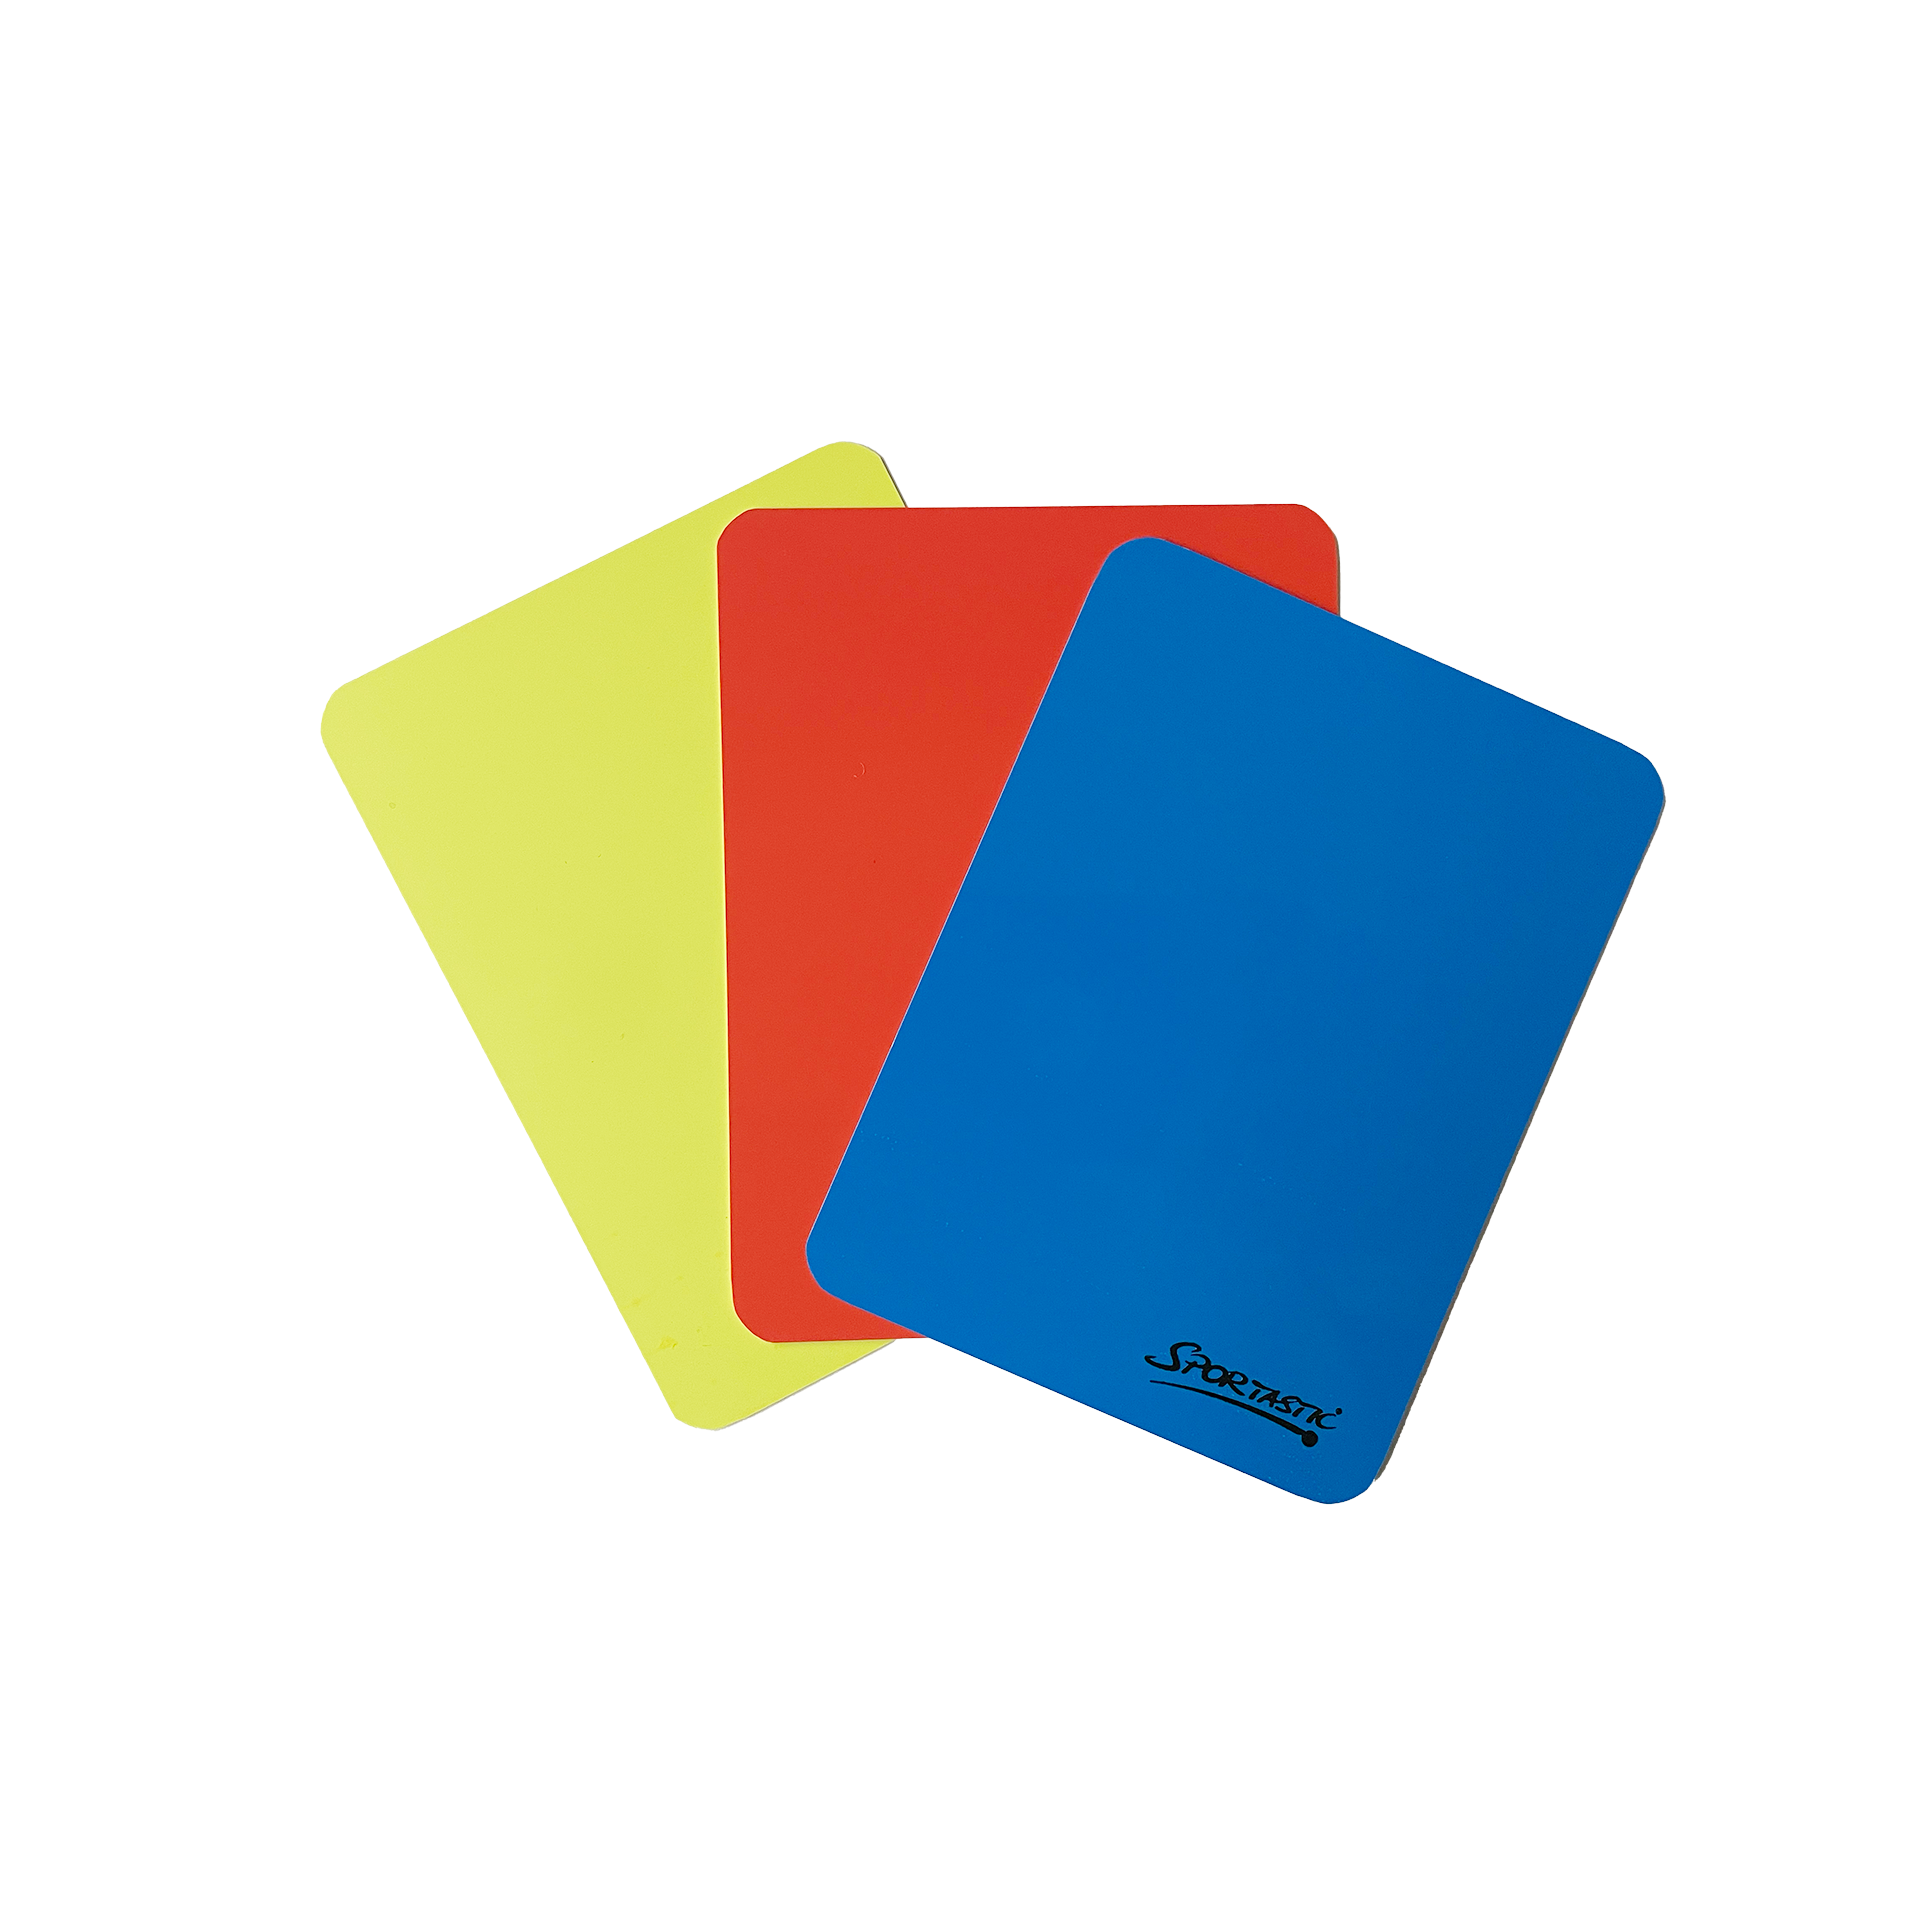 Schiedsrichterkarten im Set "rot/gelb/blau"